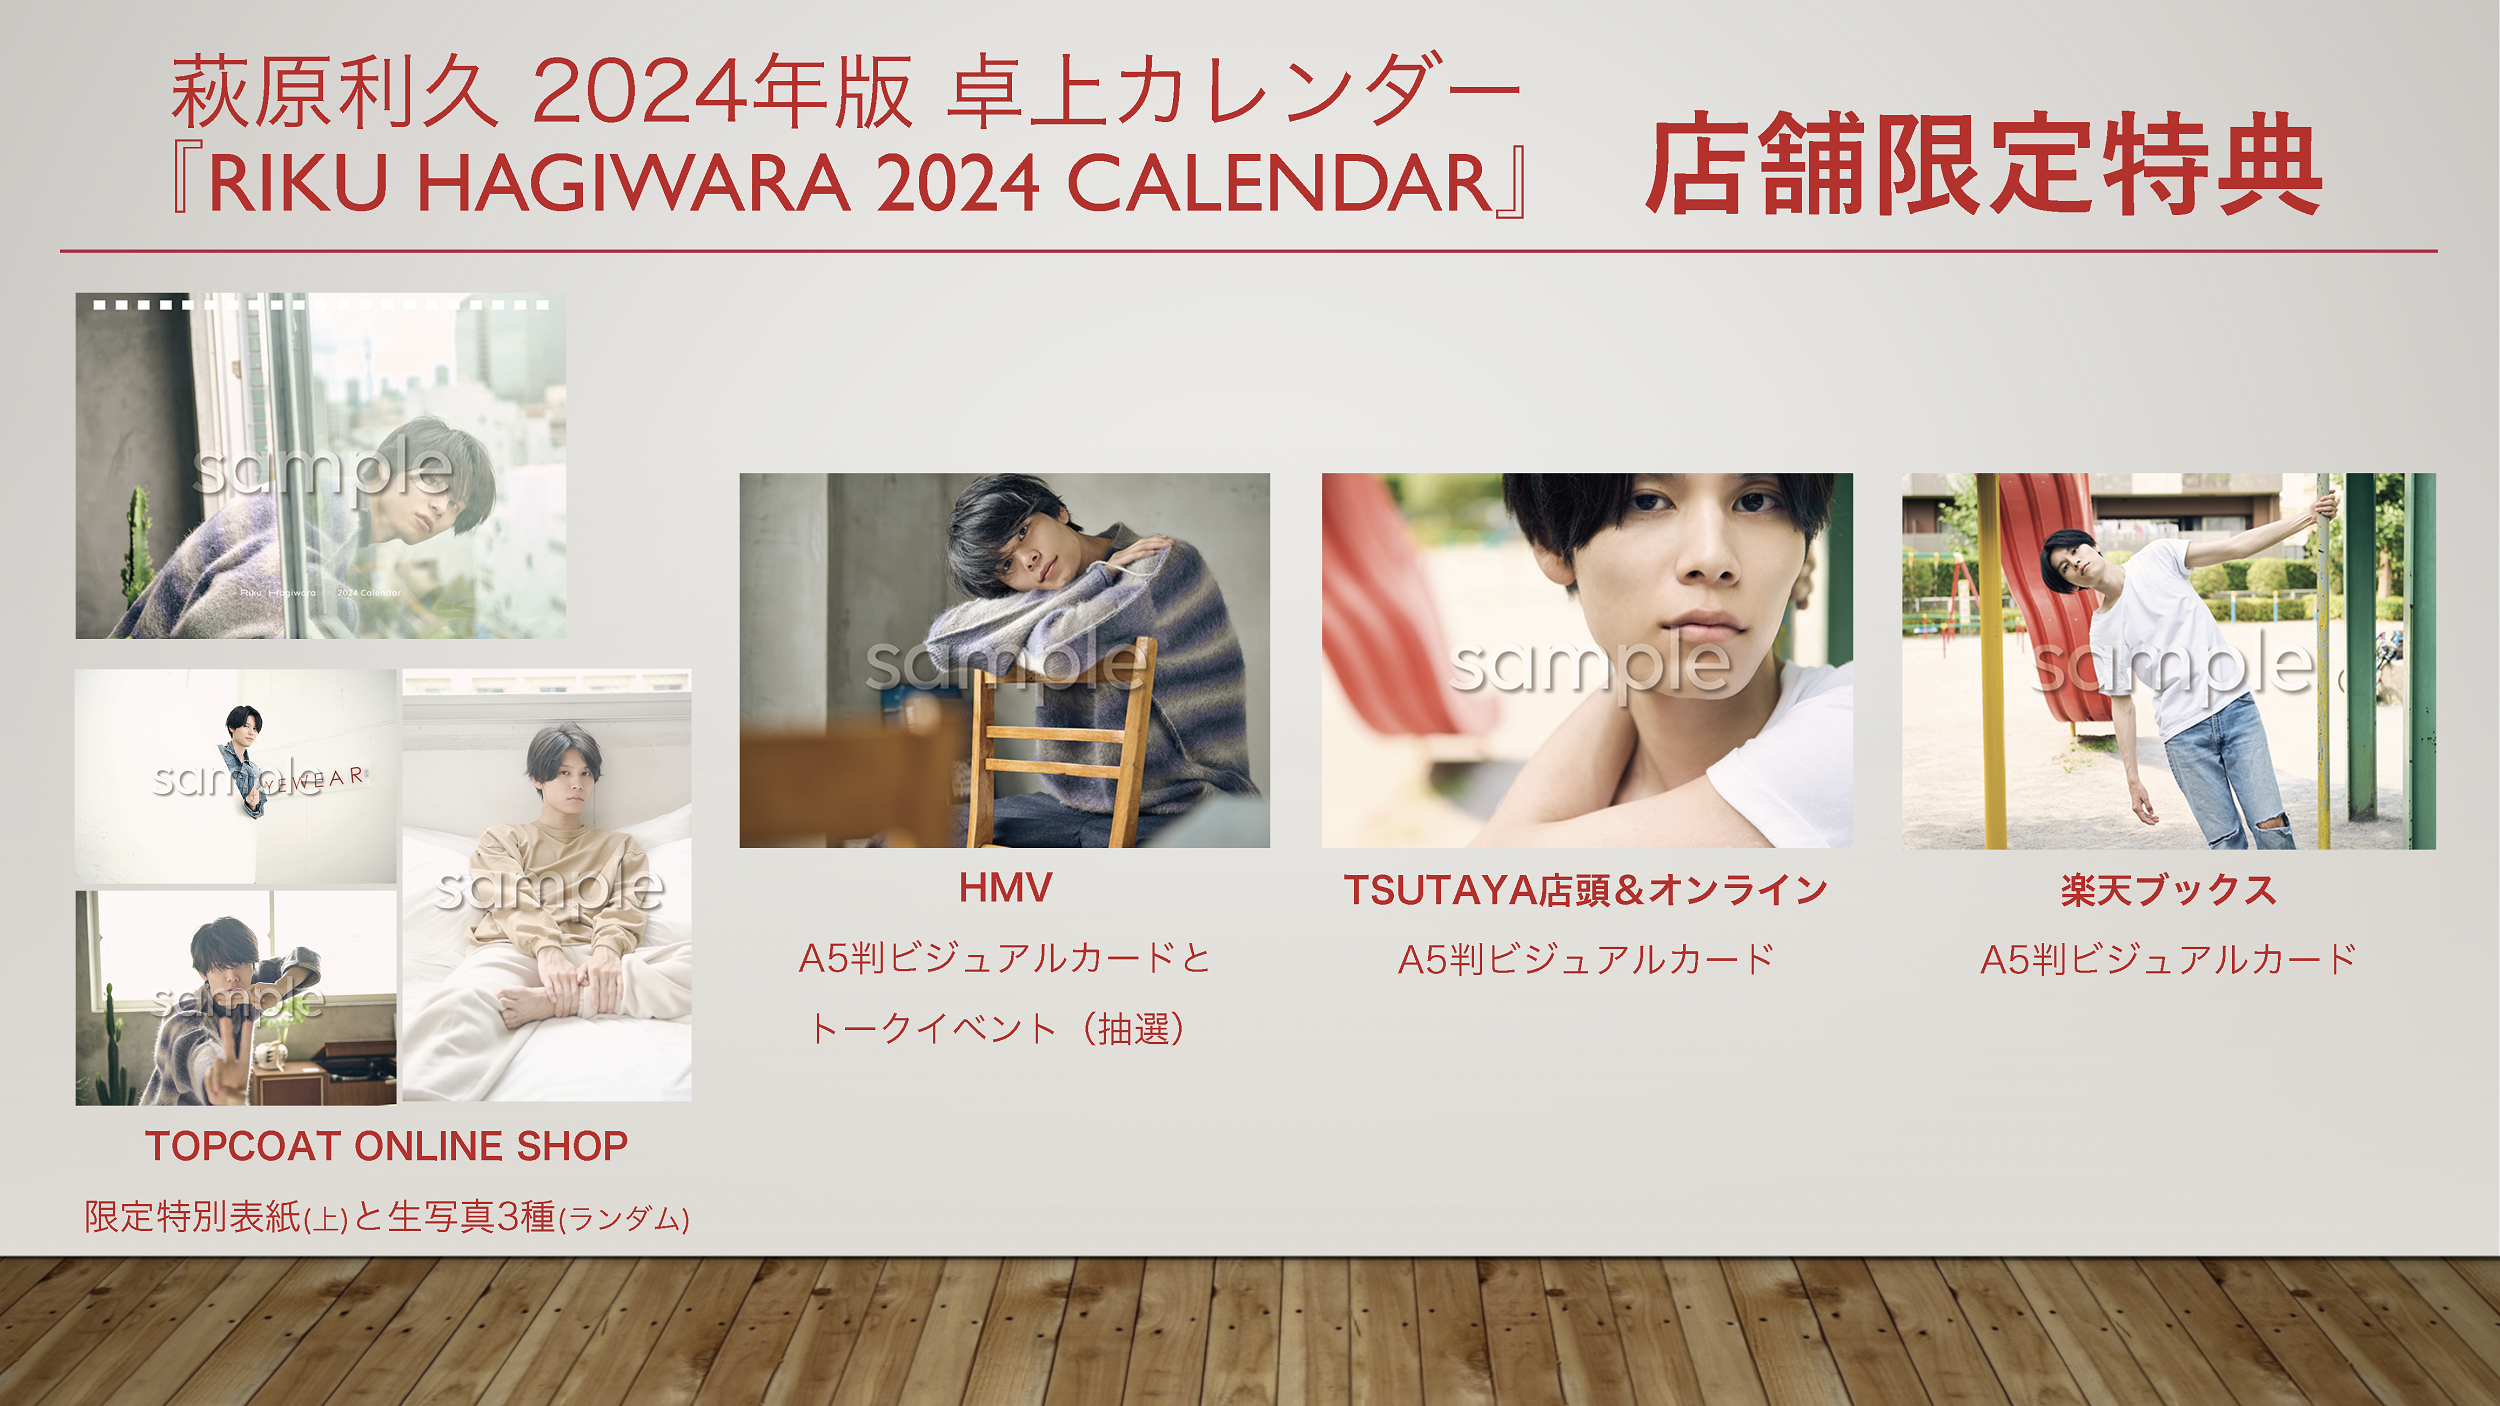 俳優・萩原利久さんの2024年版卓上カレンダー、表紙と限定購入特典が